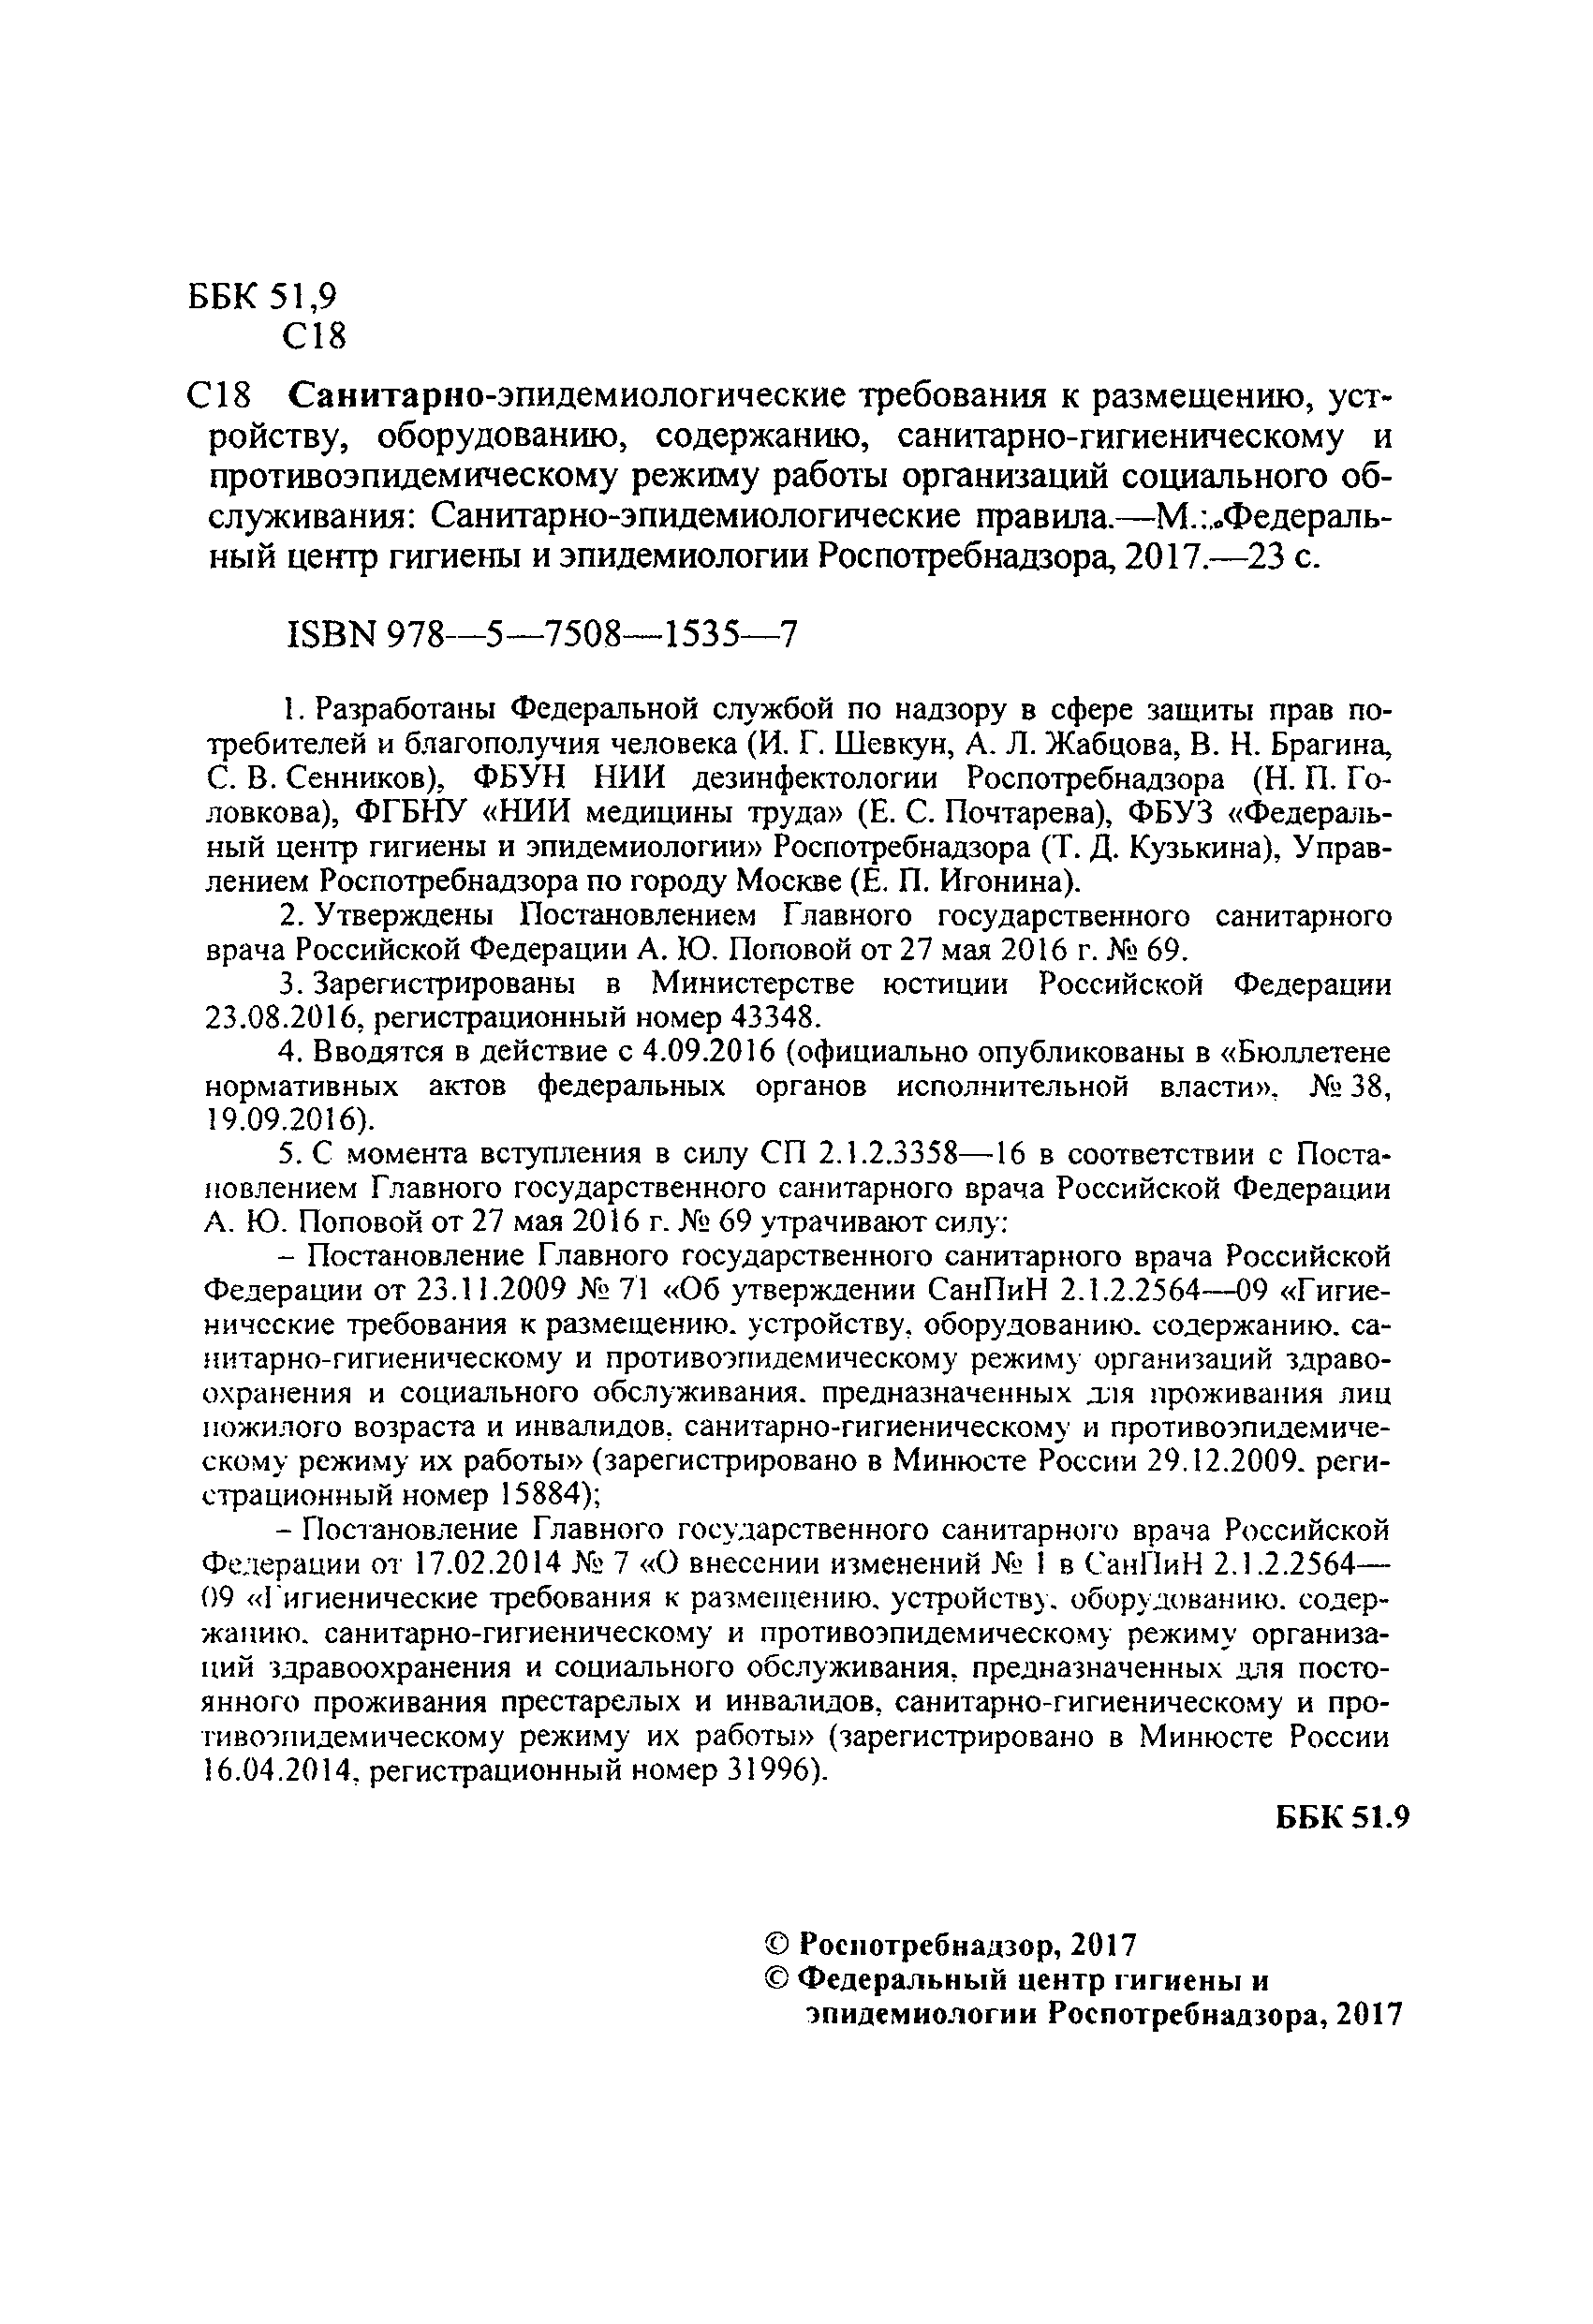 СП 2.1.2.3358-16